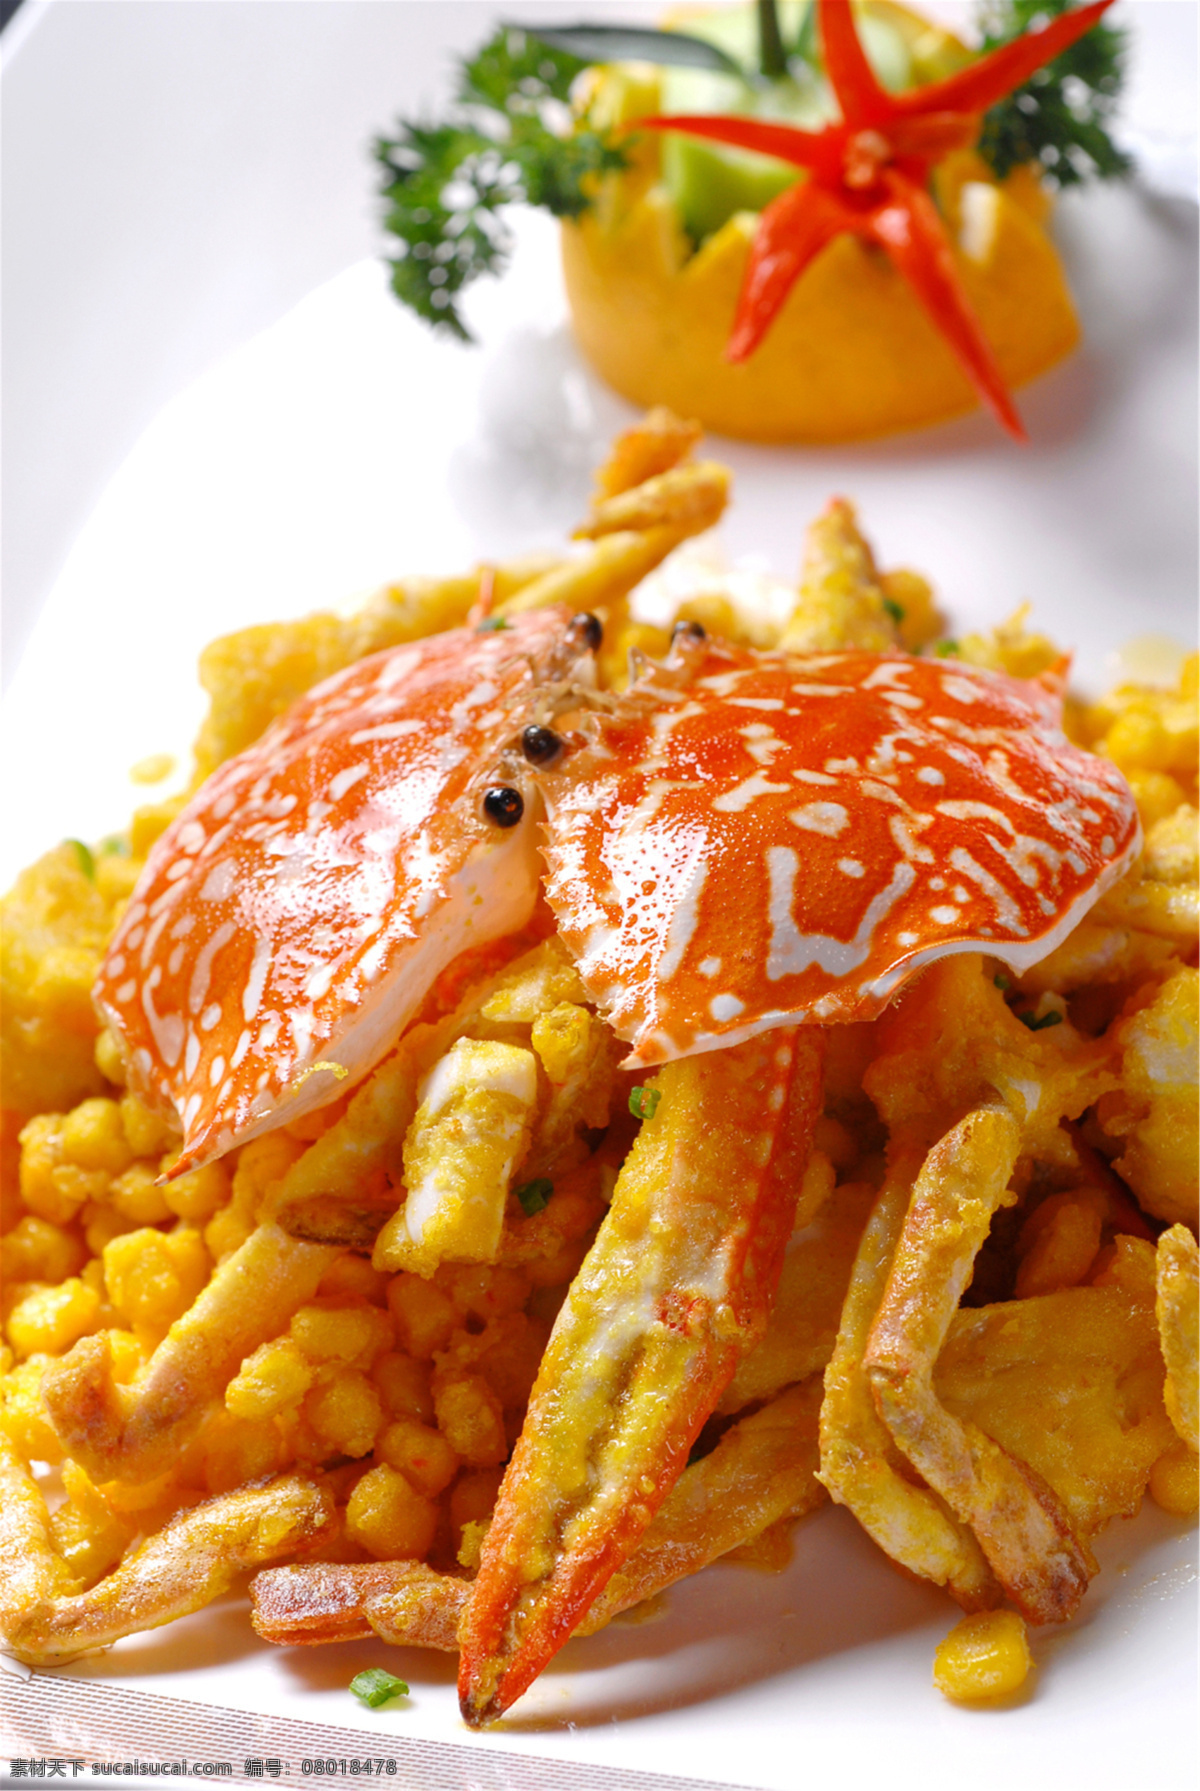 沙焗花蟹时价 美食 传统美食 餐饮美食 高清菜谱用图